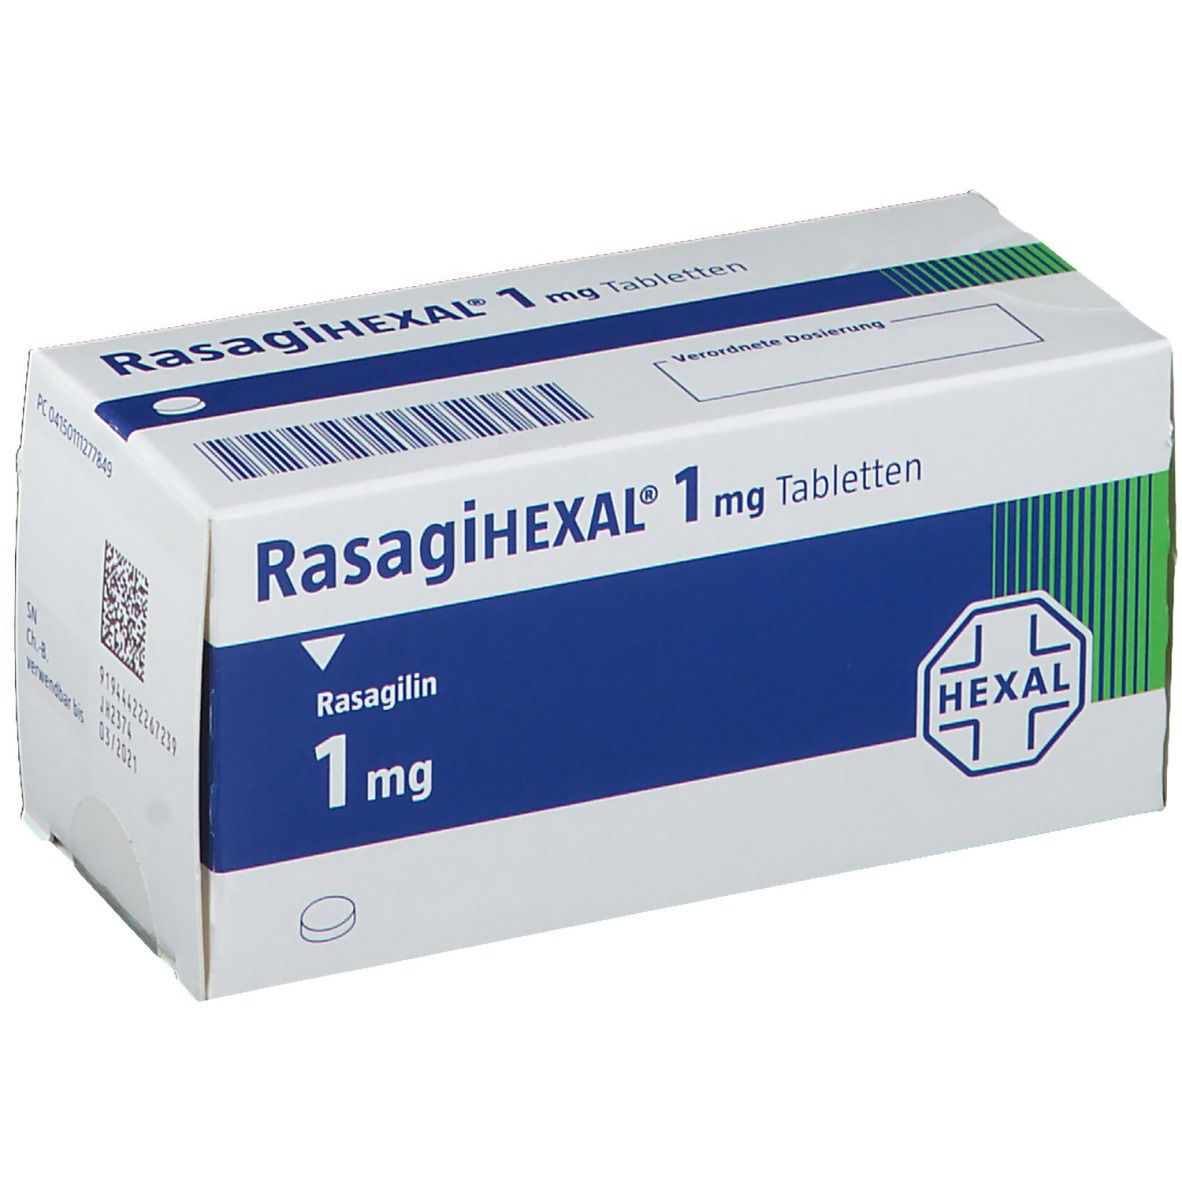 RasagiHEXAL® 1 mg